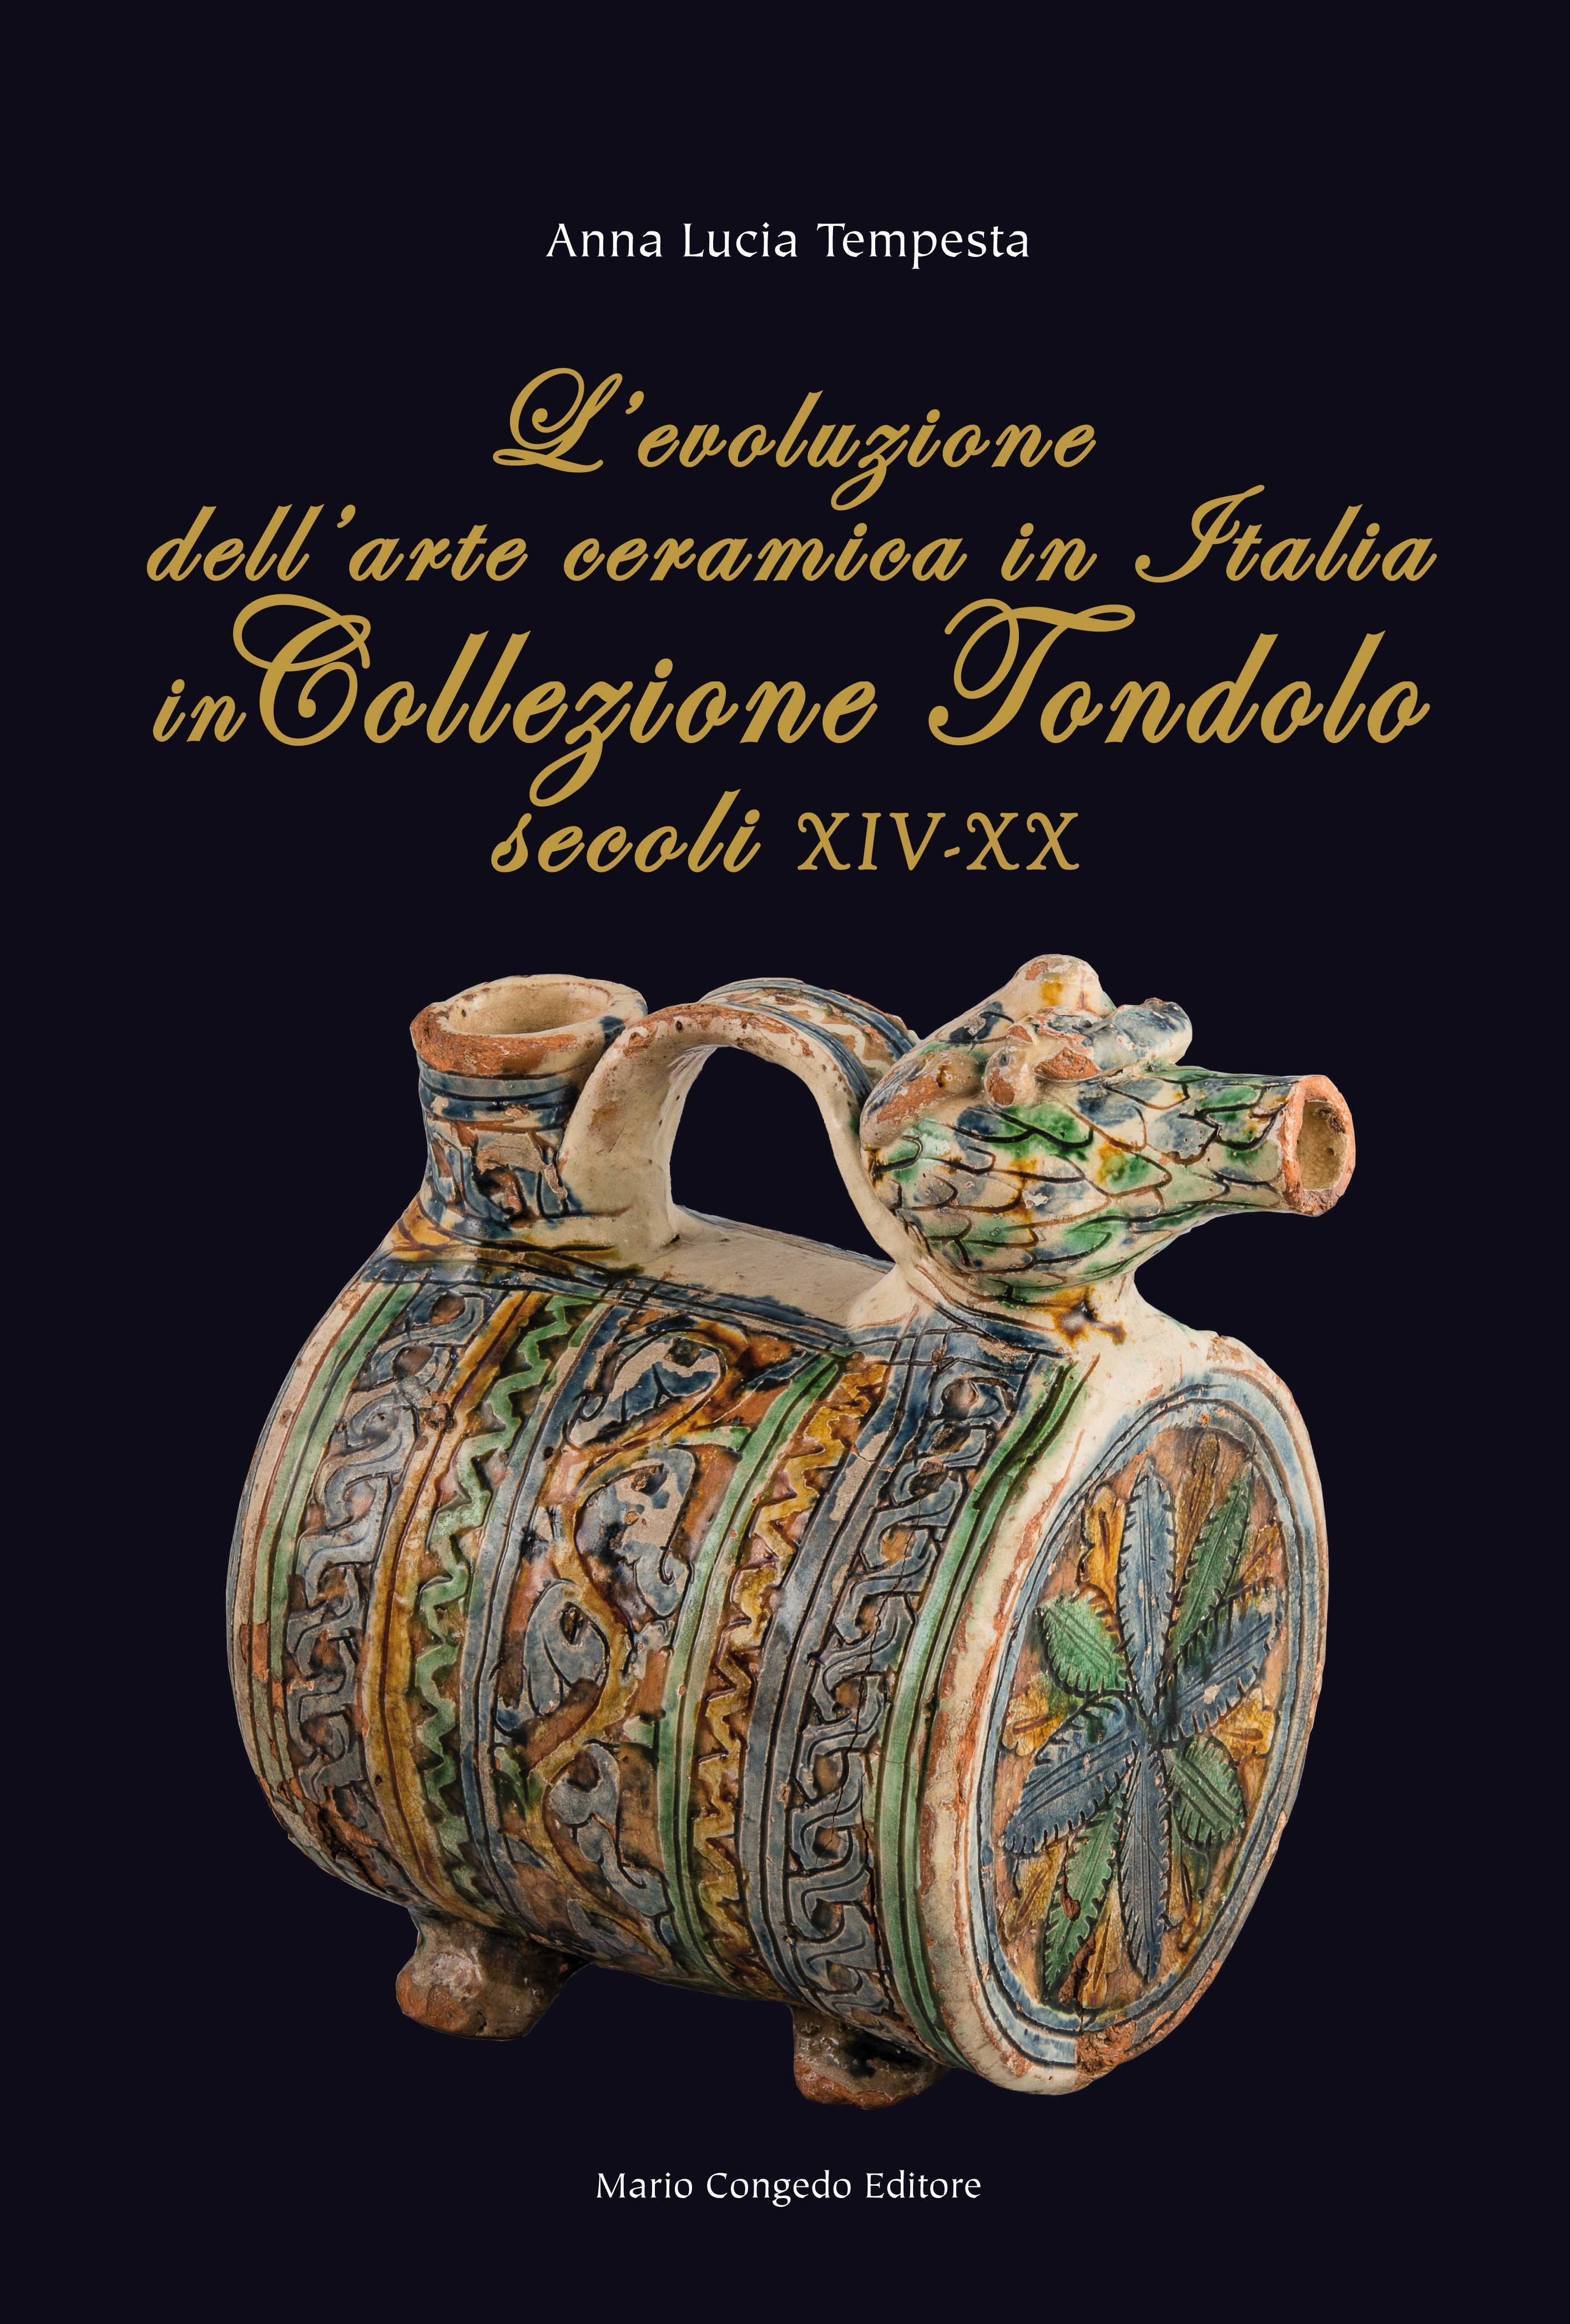 L'evoluzione dell'arte ceramica in Italia in Collezione Tondolo (secoli XIV-XX)